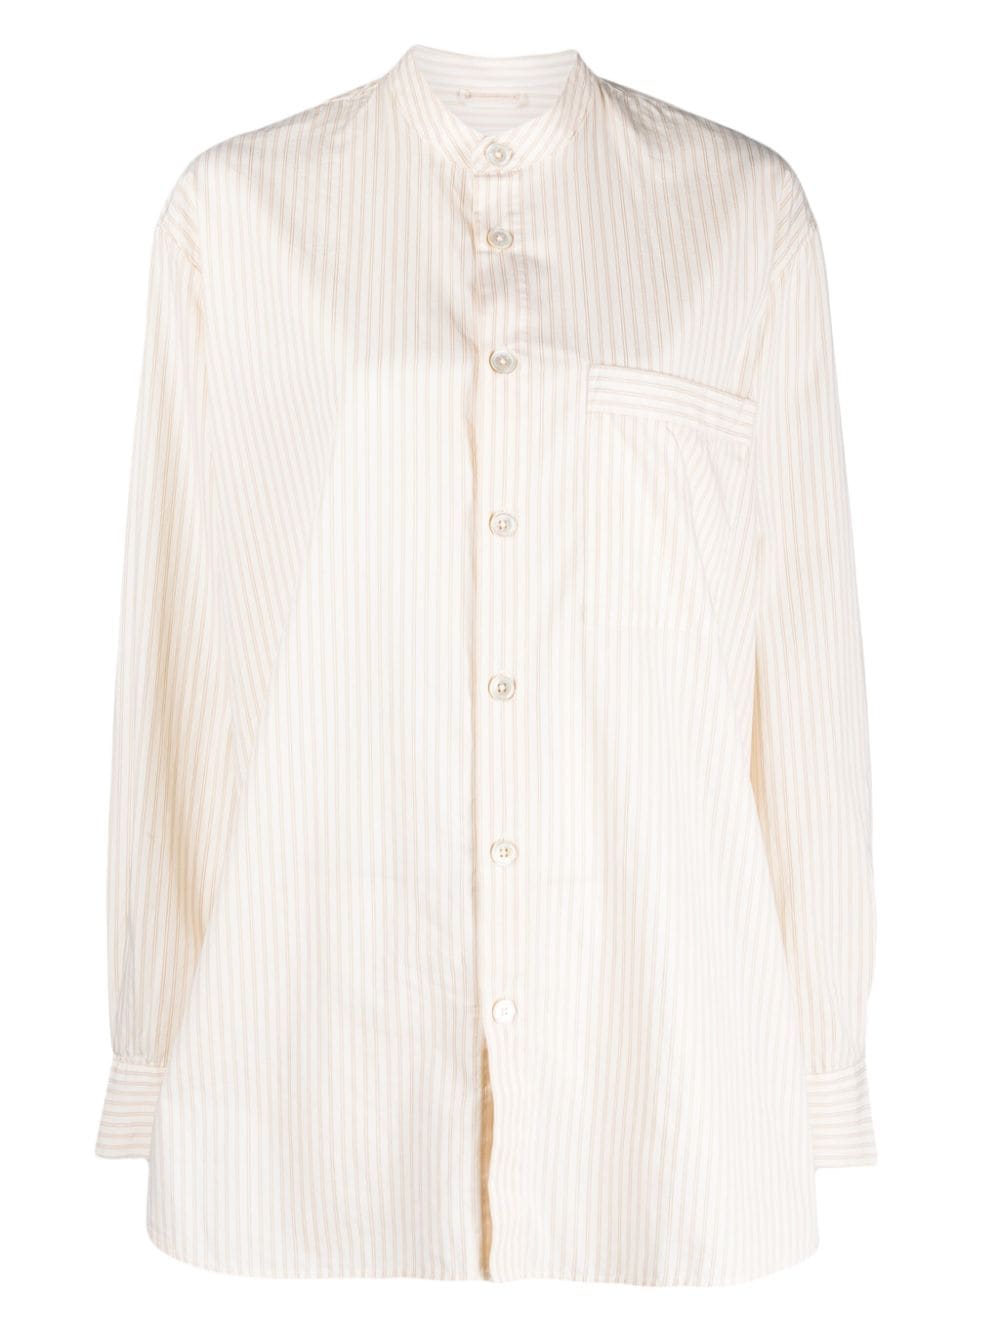 Birkenstock striped organic cotton pyjama shirt - Neutrals von Birkenstock